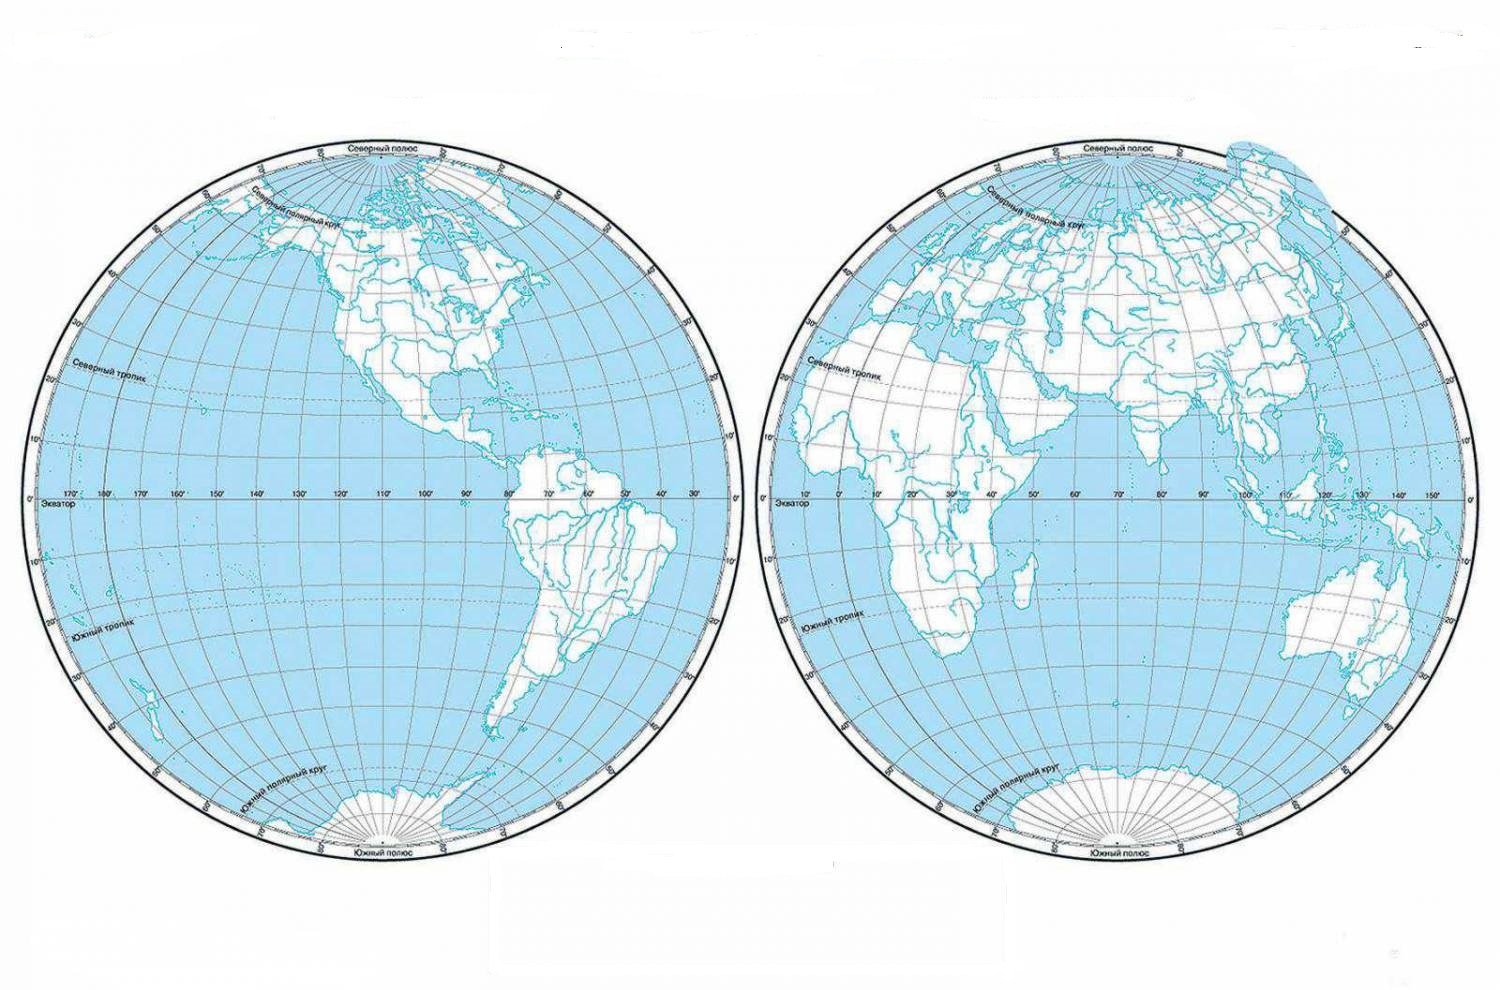 Контурная карта градусная сеть стр 14 15. Западное и Восточное полушарие контурная карта. Западное полушарие и Восточное полушарие контурная карта. Контурная карта восточного полушария.